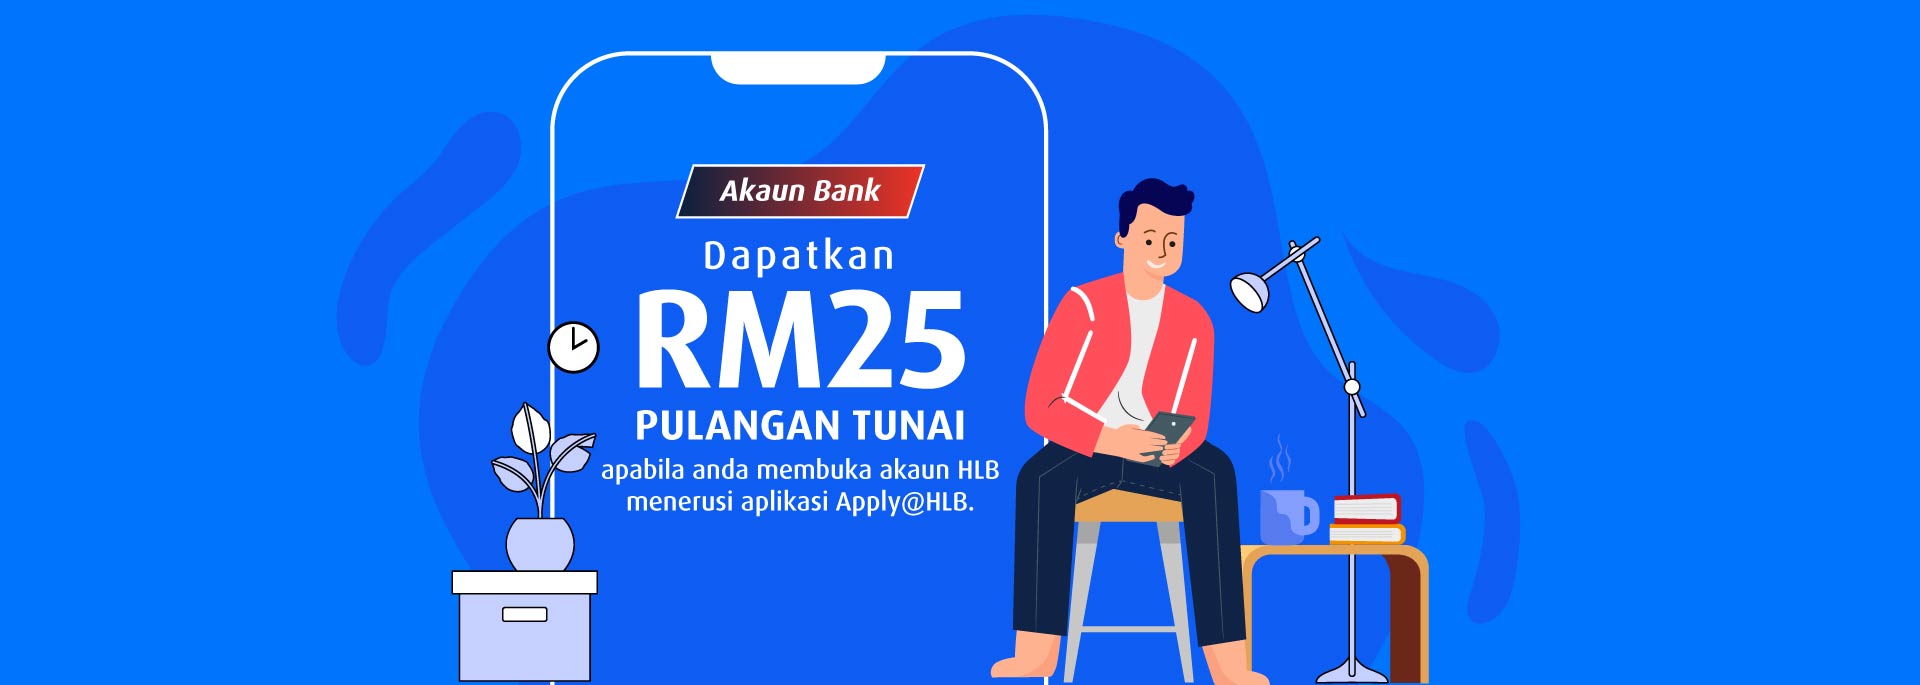 Dapatkan RM25 pulangan tunai apabila anda membuka akaun HLB menerusi aplikasi Apply@HLB